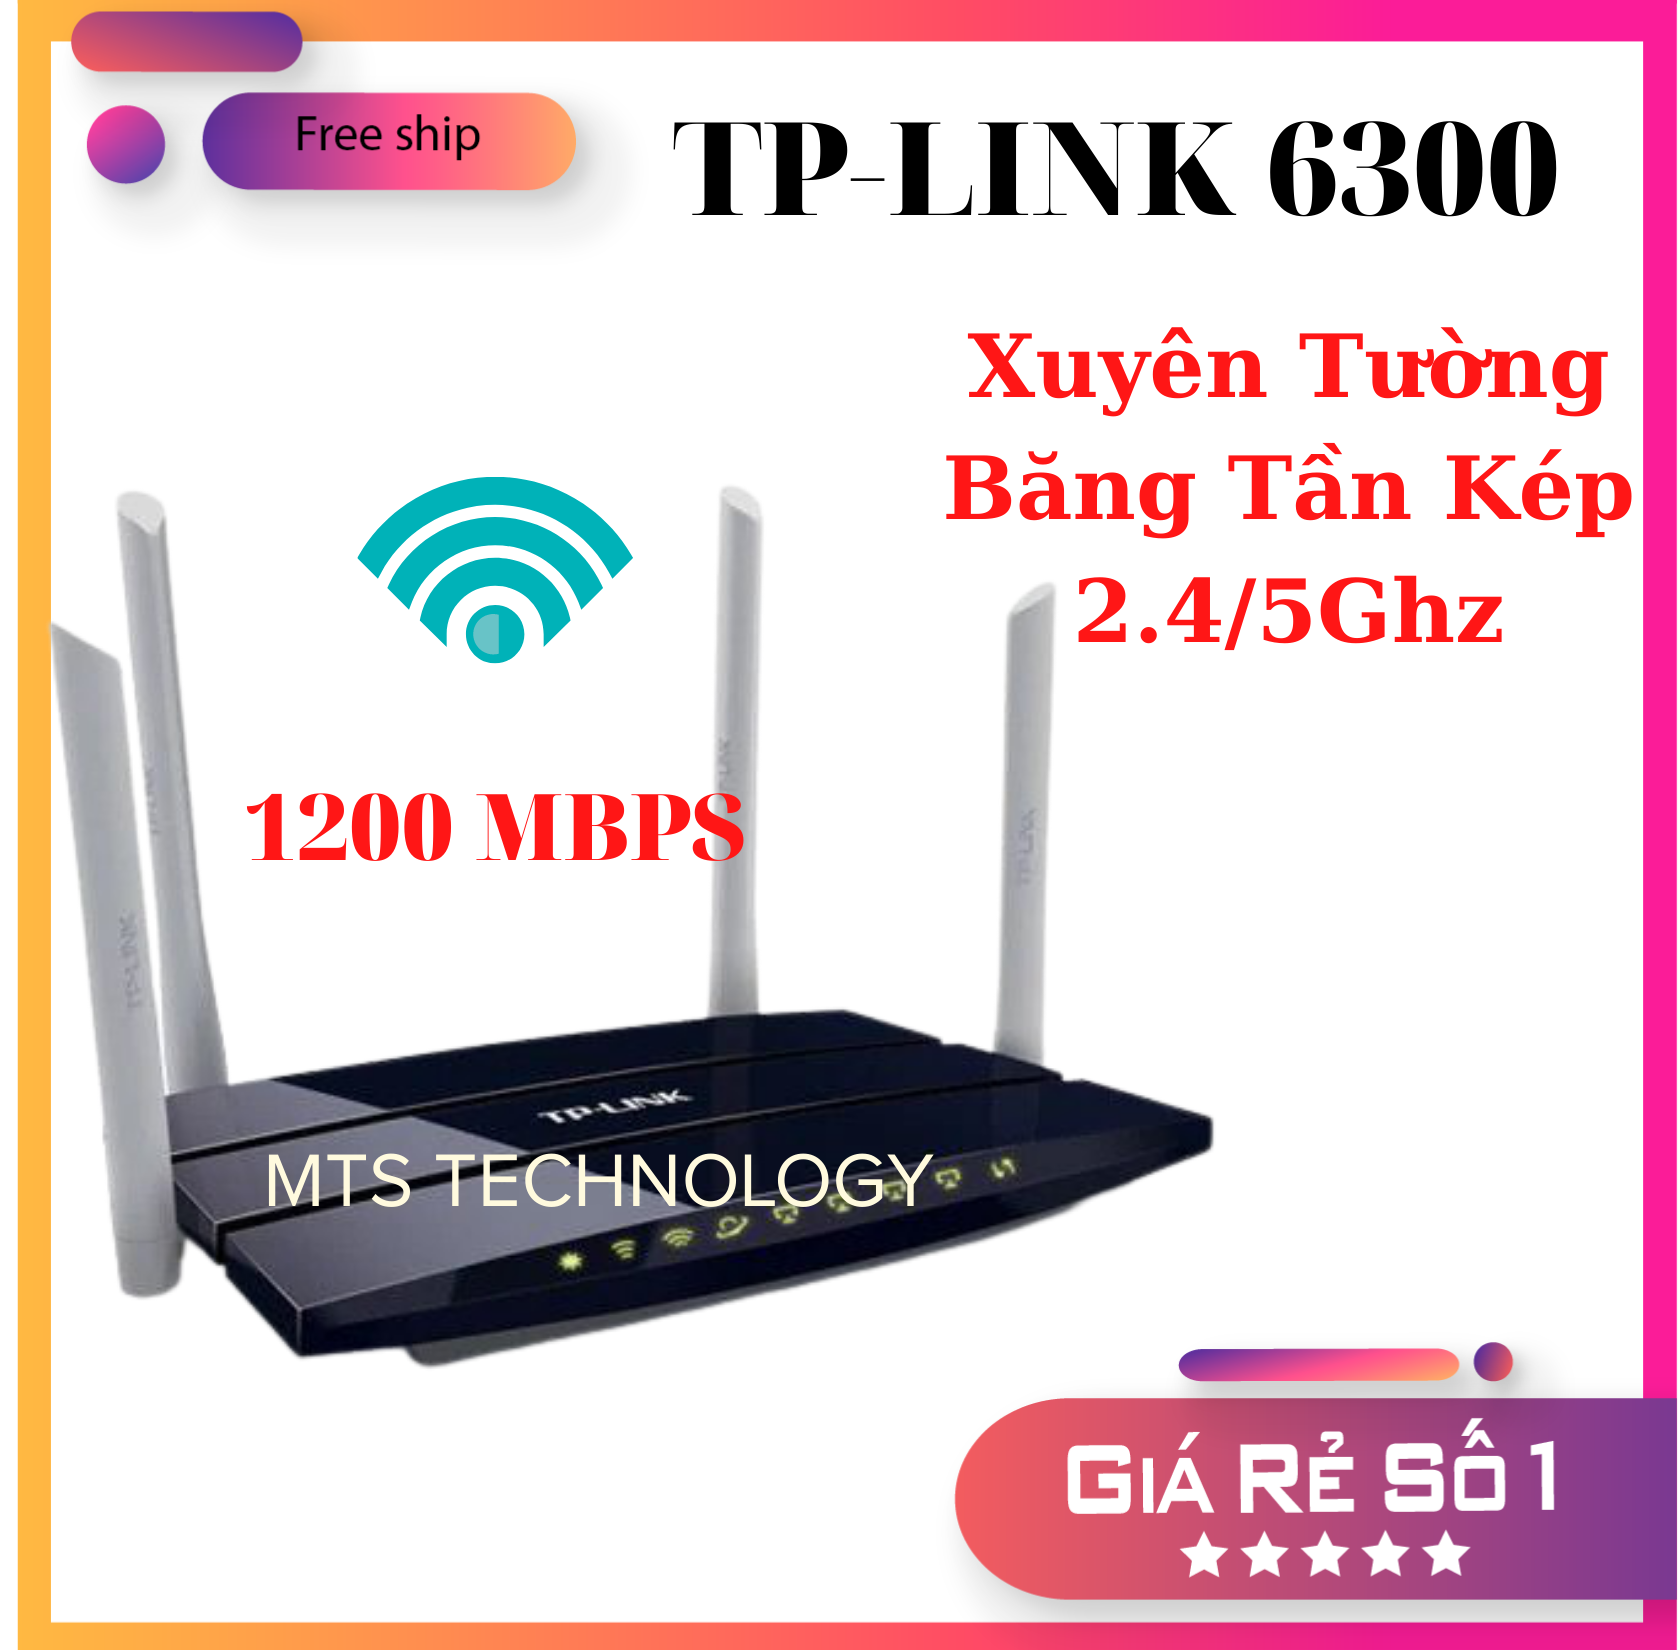 Bộ phát wifi TPLINK băng tần kép sóng xuyên tường 6300 chuẩn AC 1200 Mbps